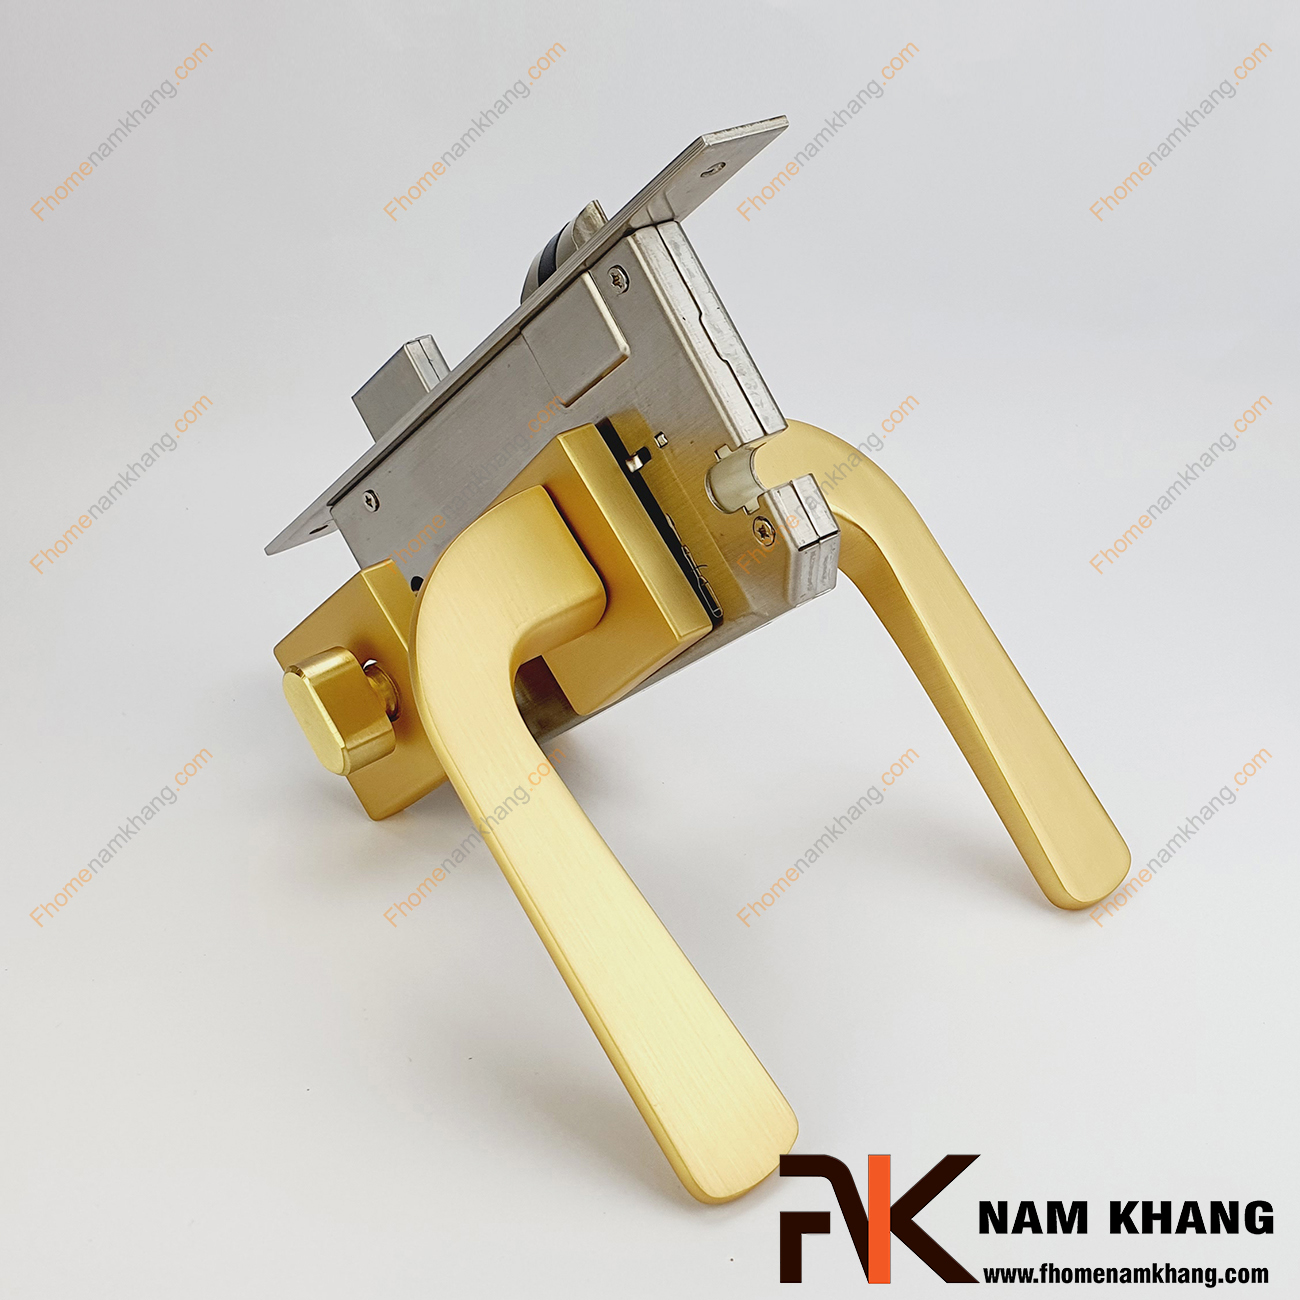 Khóa cửa phân thể dạng trơn màu vàng mờ NK572-VM được sản xuất từ hợp kim cao cấp. Khóa có thiết kế phần ốp khóa và tay gạt riêng biệt, kháa nhỏ gọn và tạo được sự nổi bật độc đáo của một dòng khóa cửa.